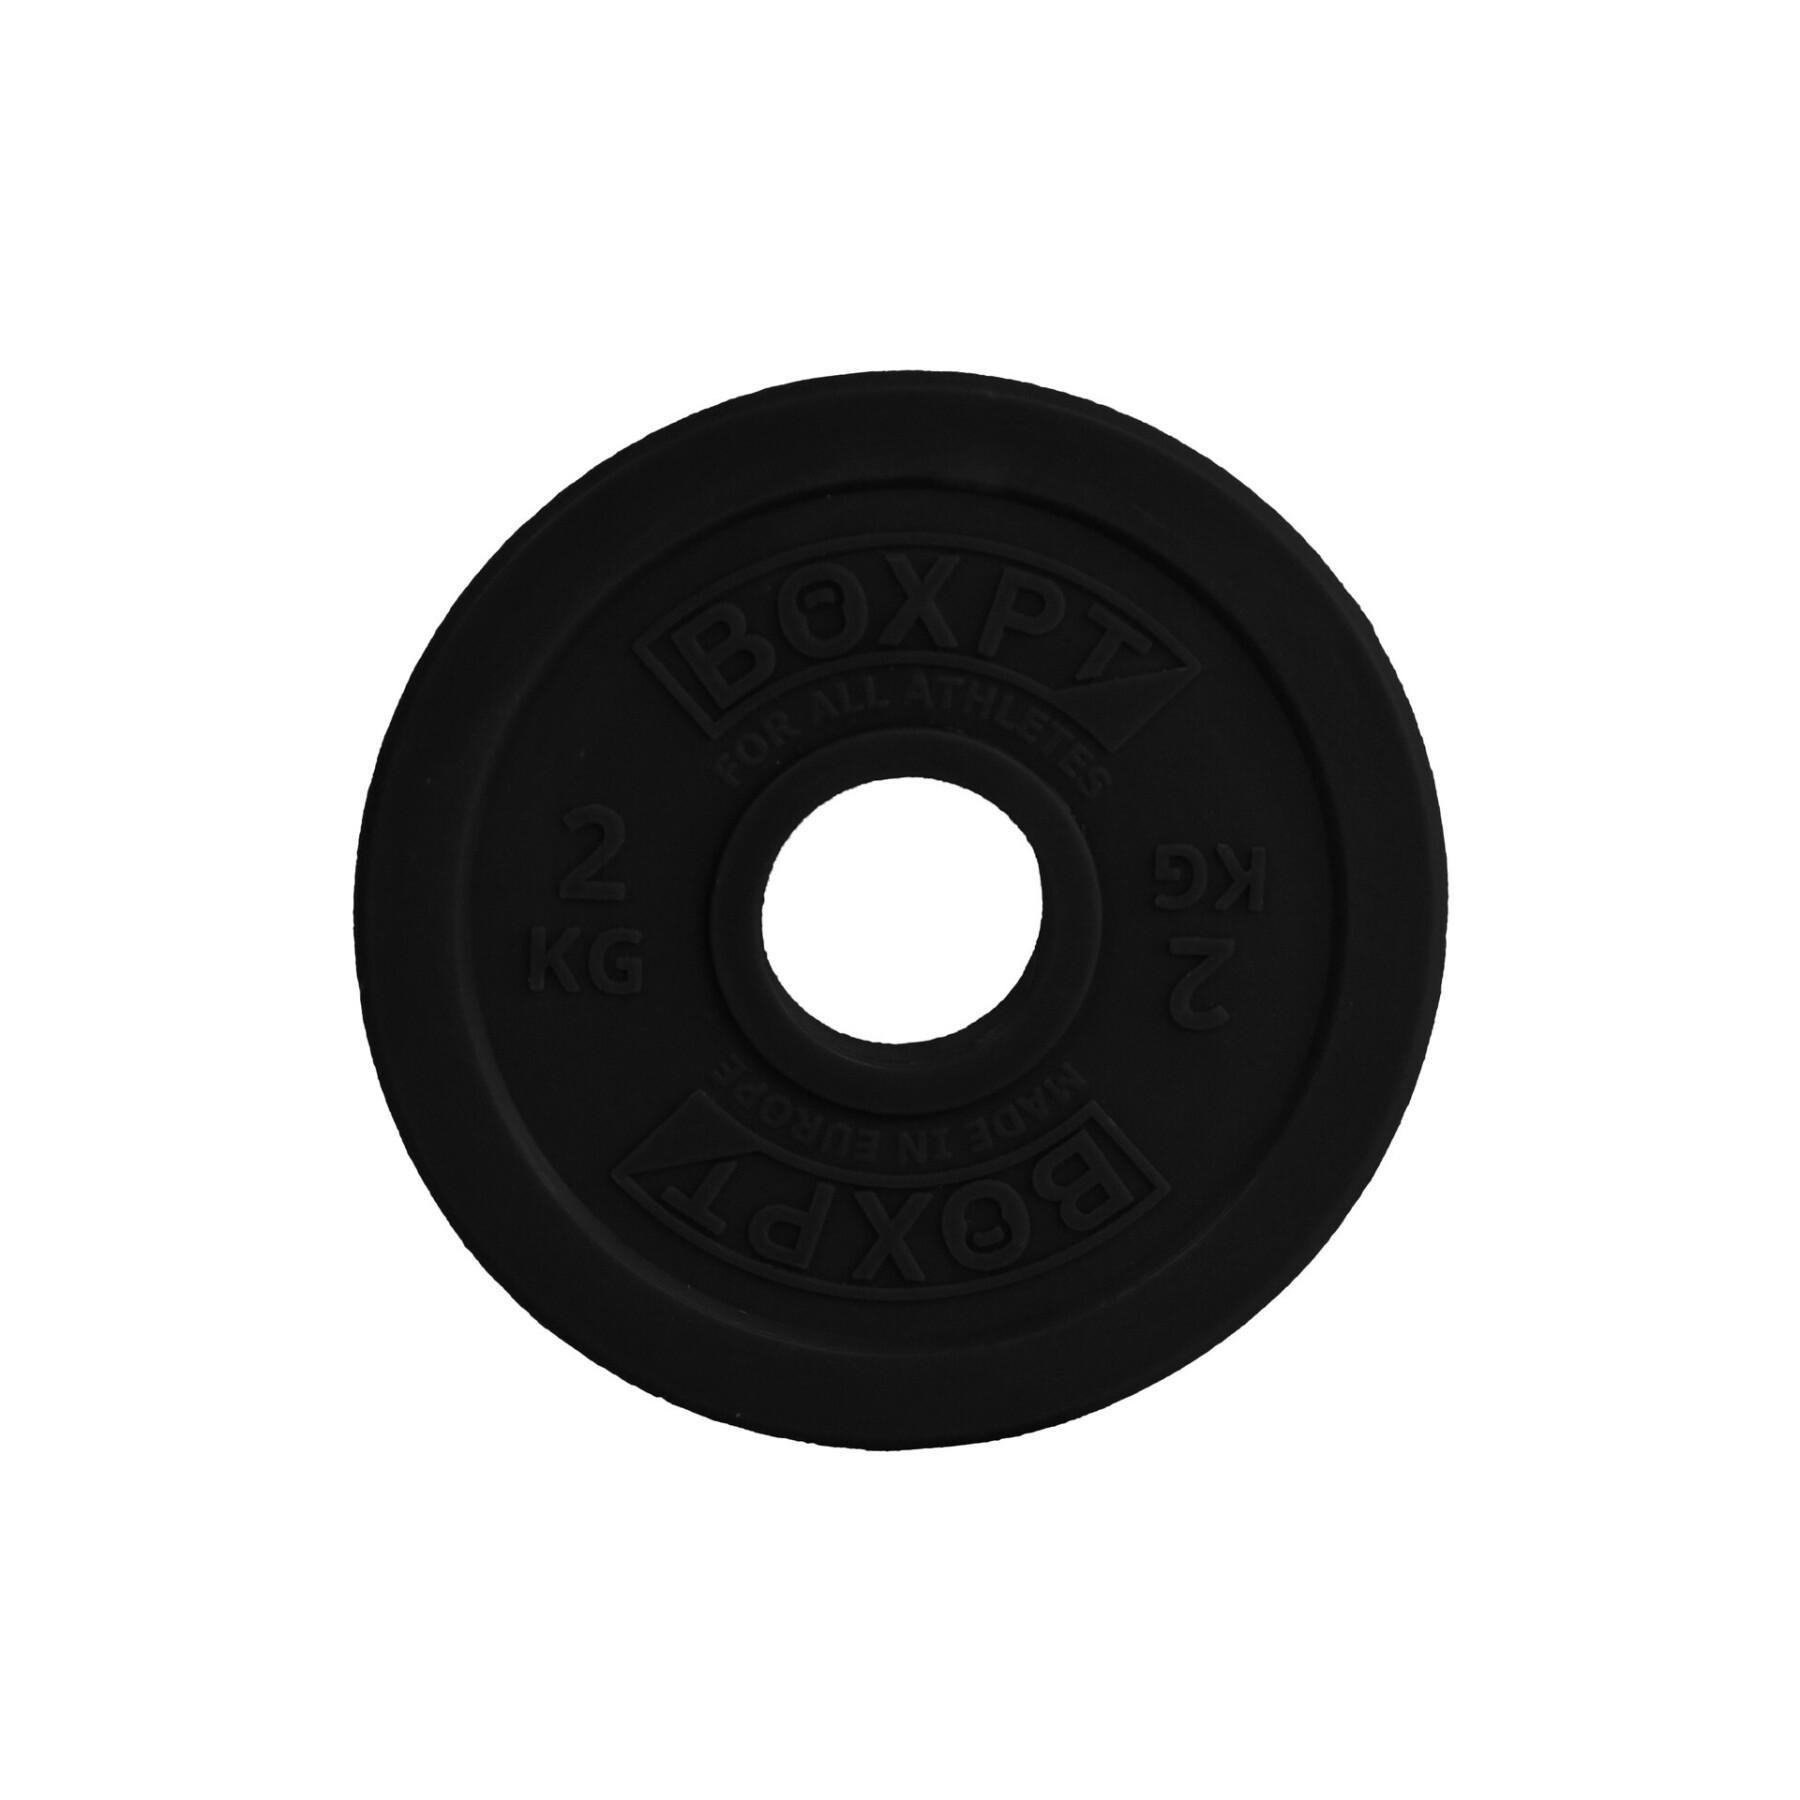 Disco per il bodybuilding Boxpt Technique - 2 kg